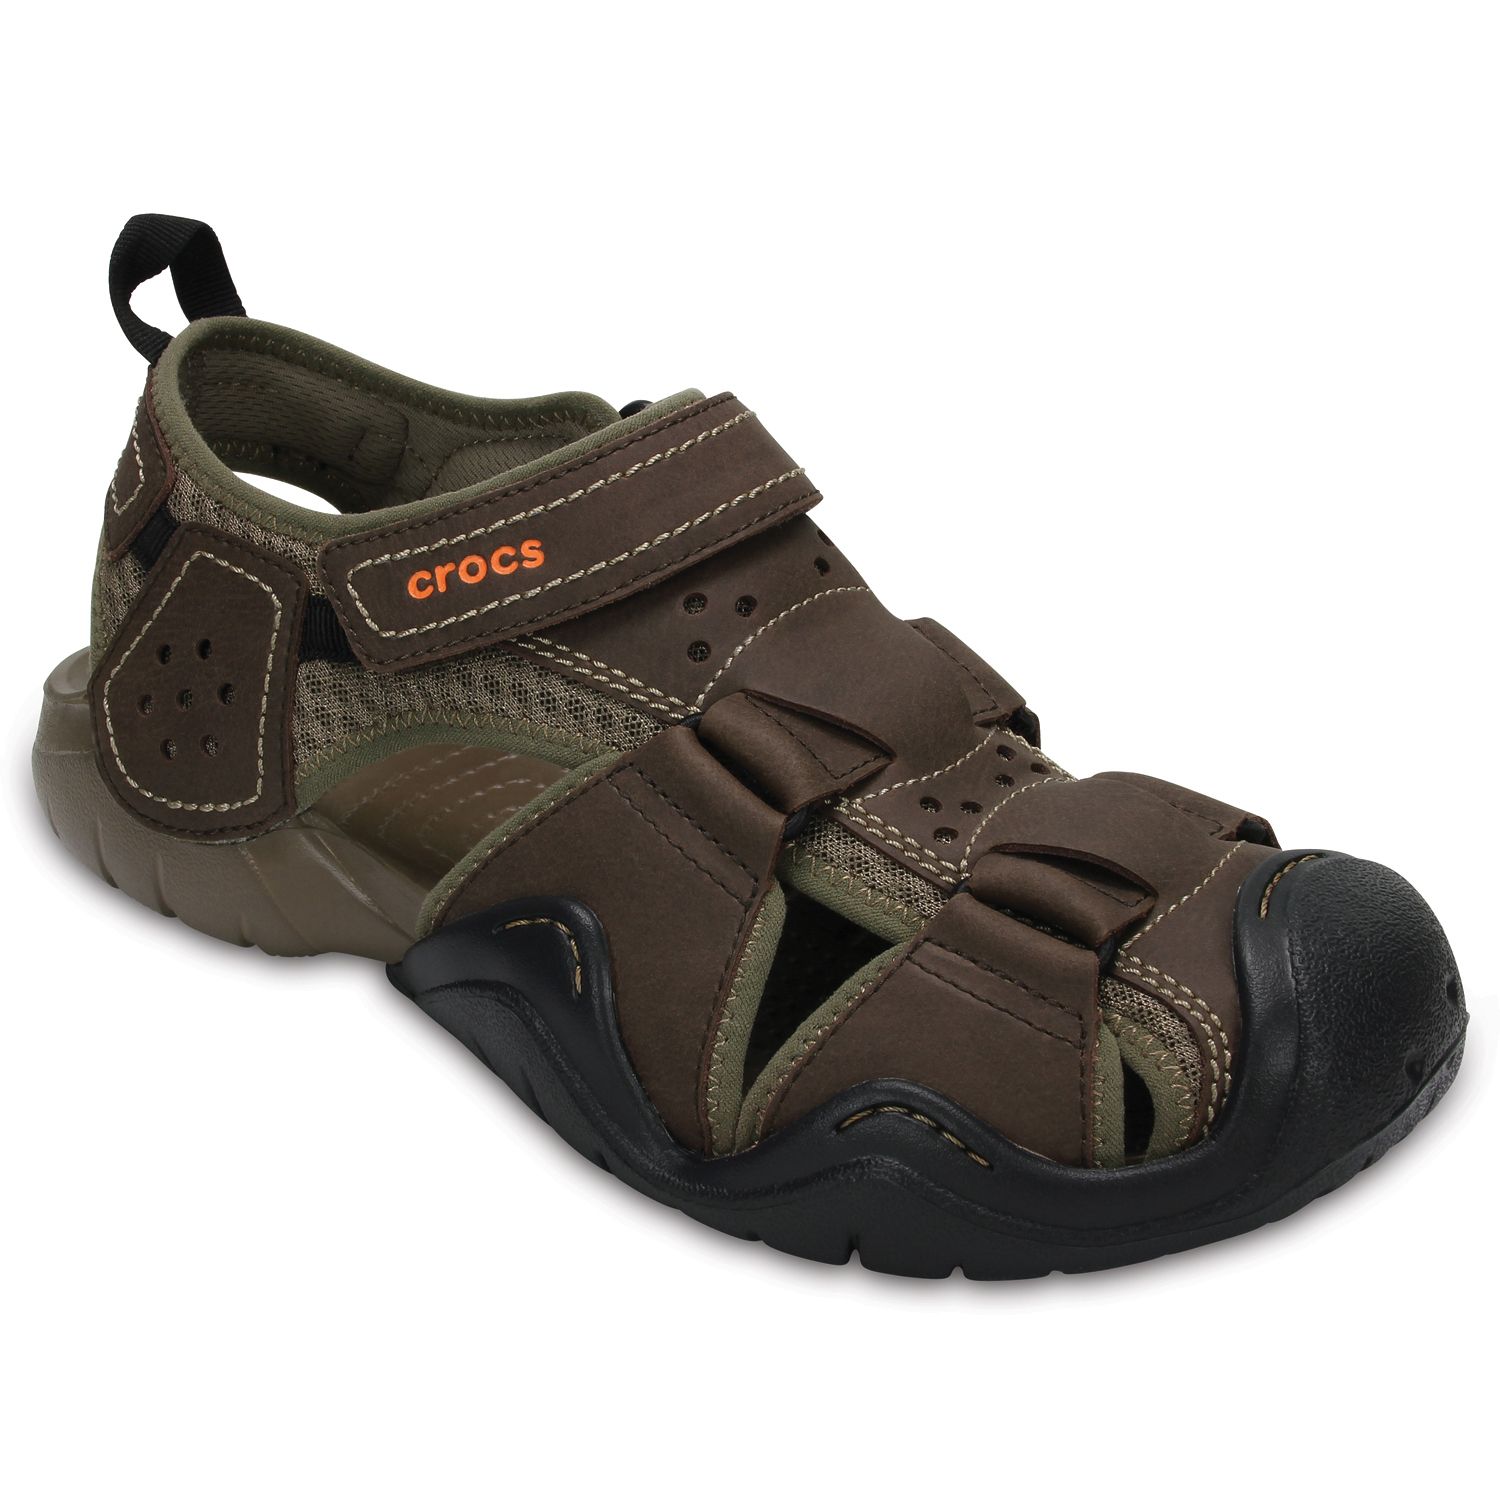 crocs leather sandals